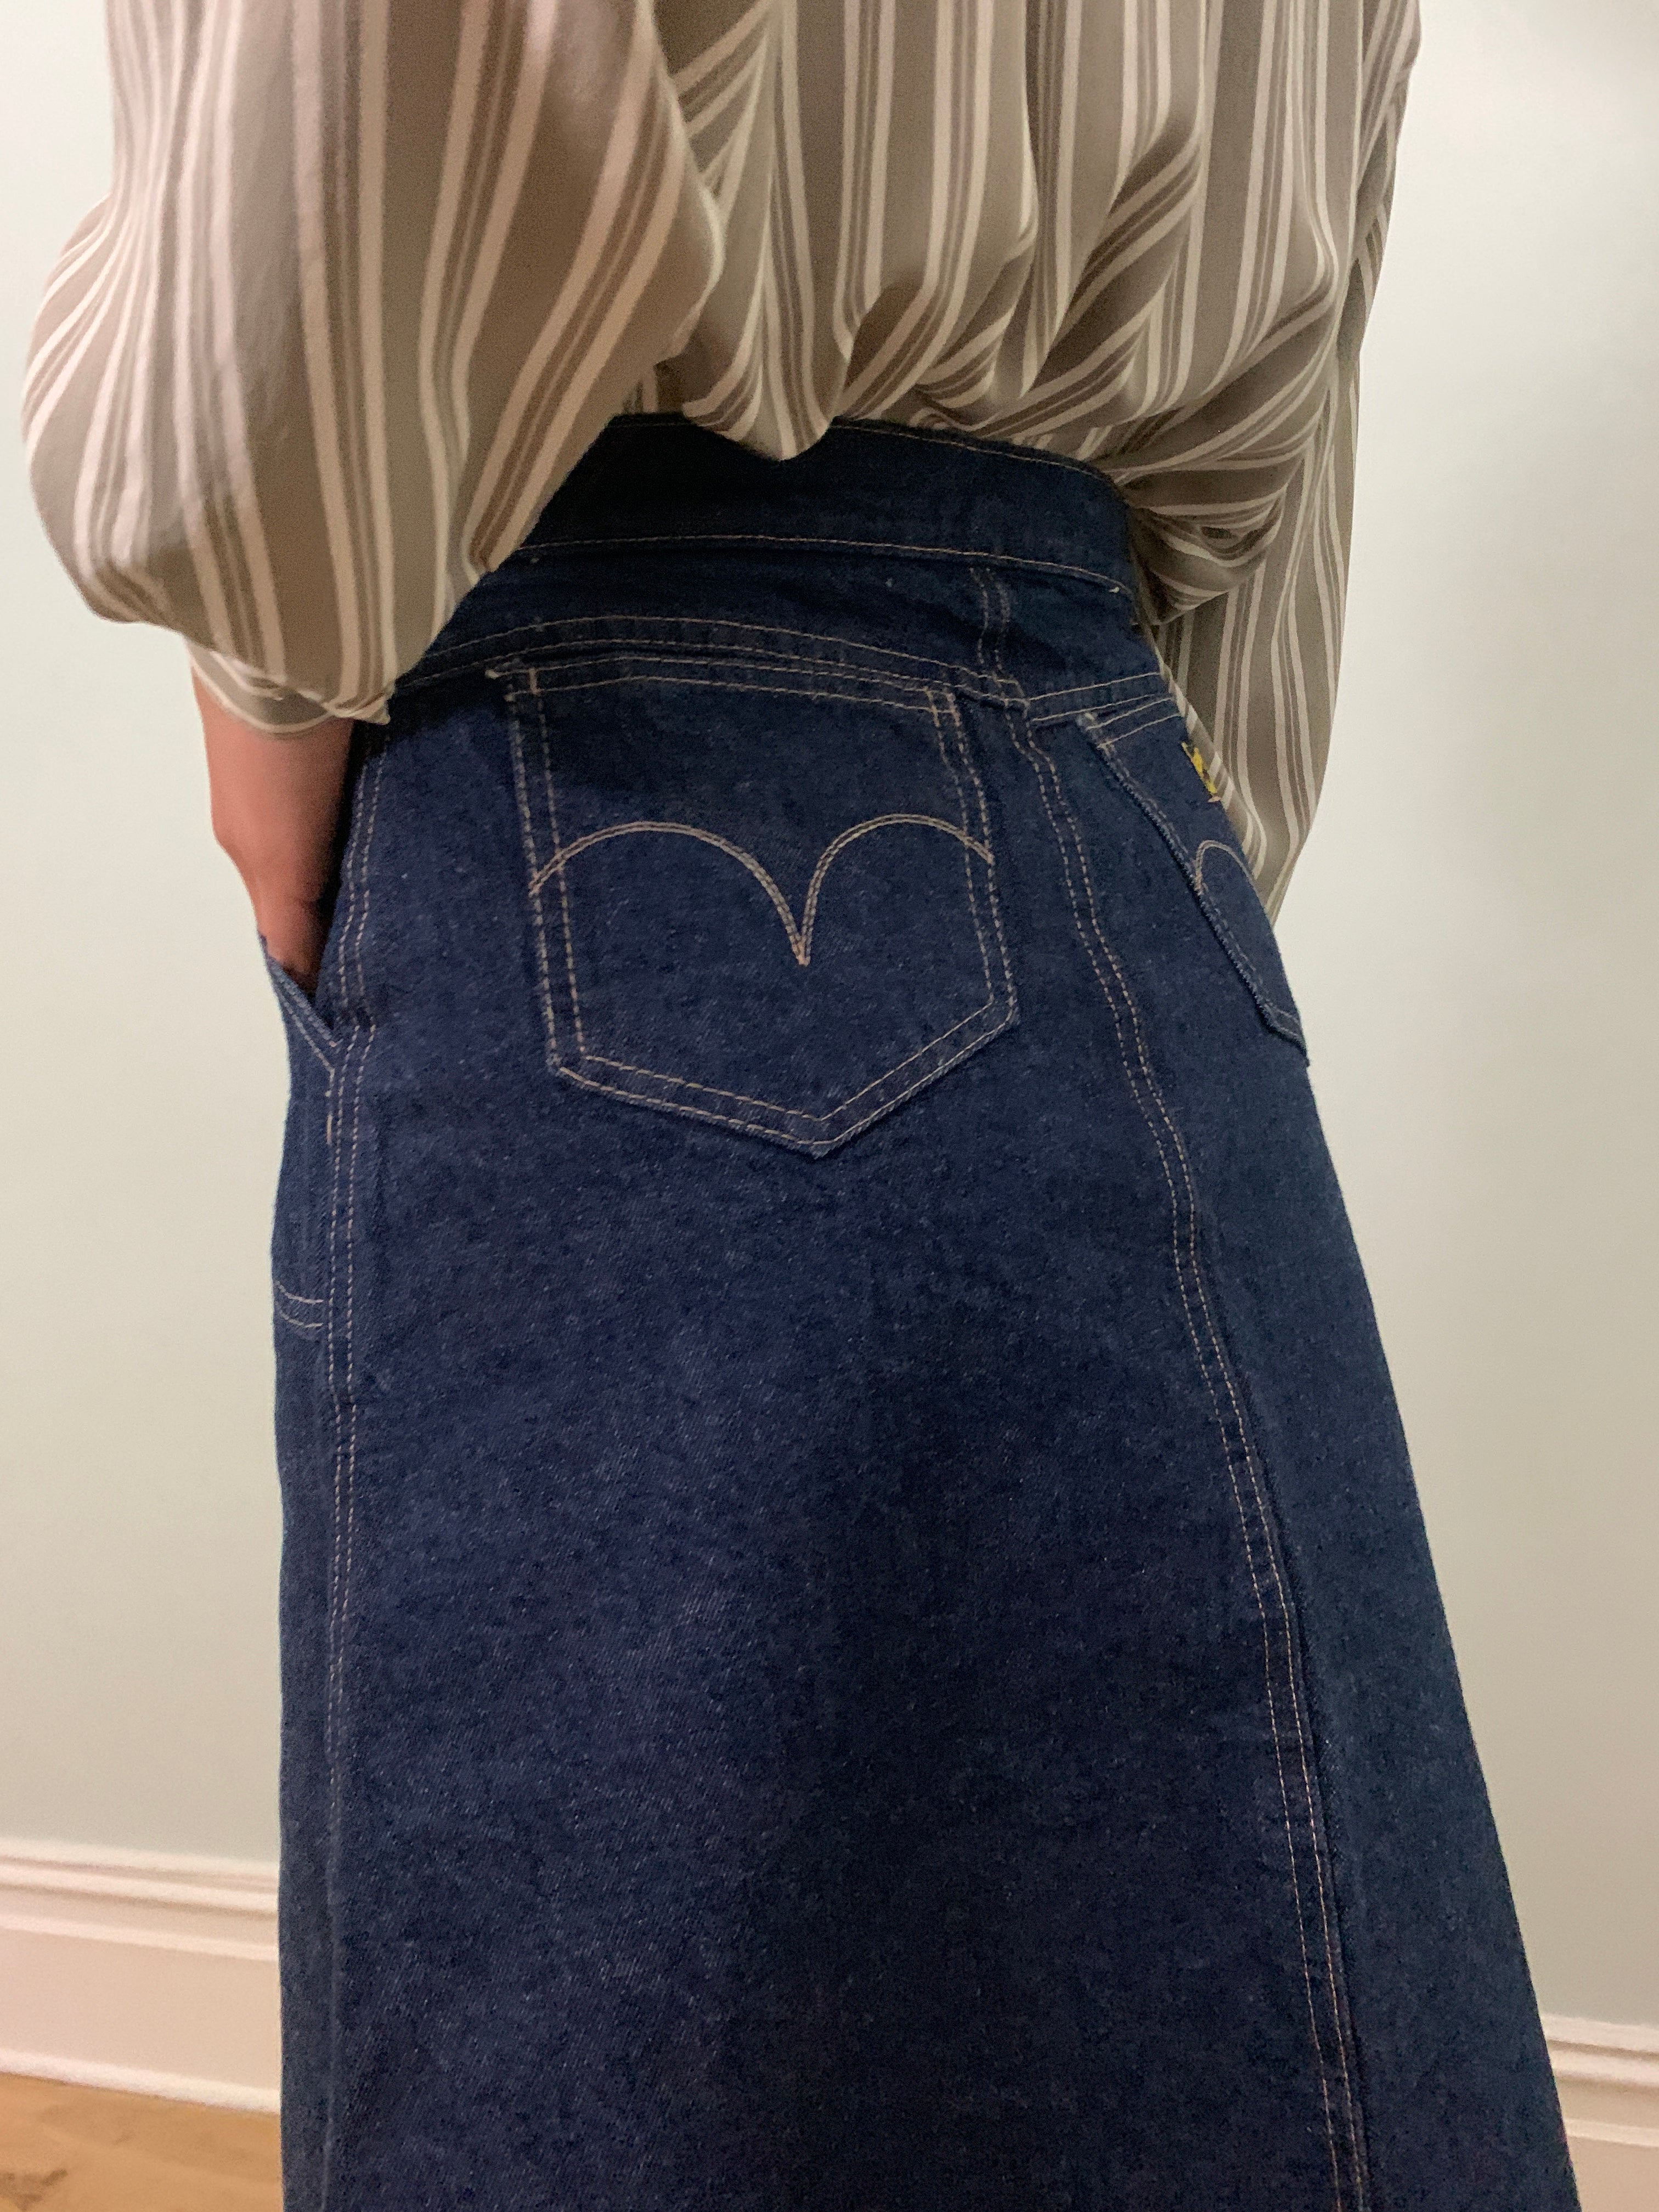 Vintage denim button through skirt